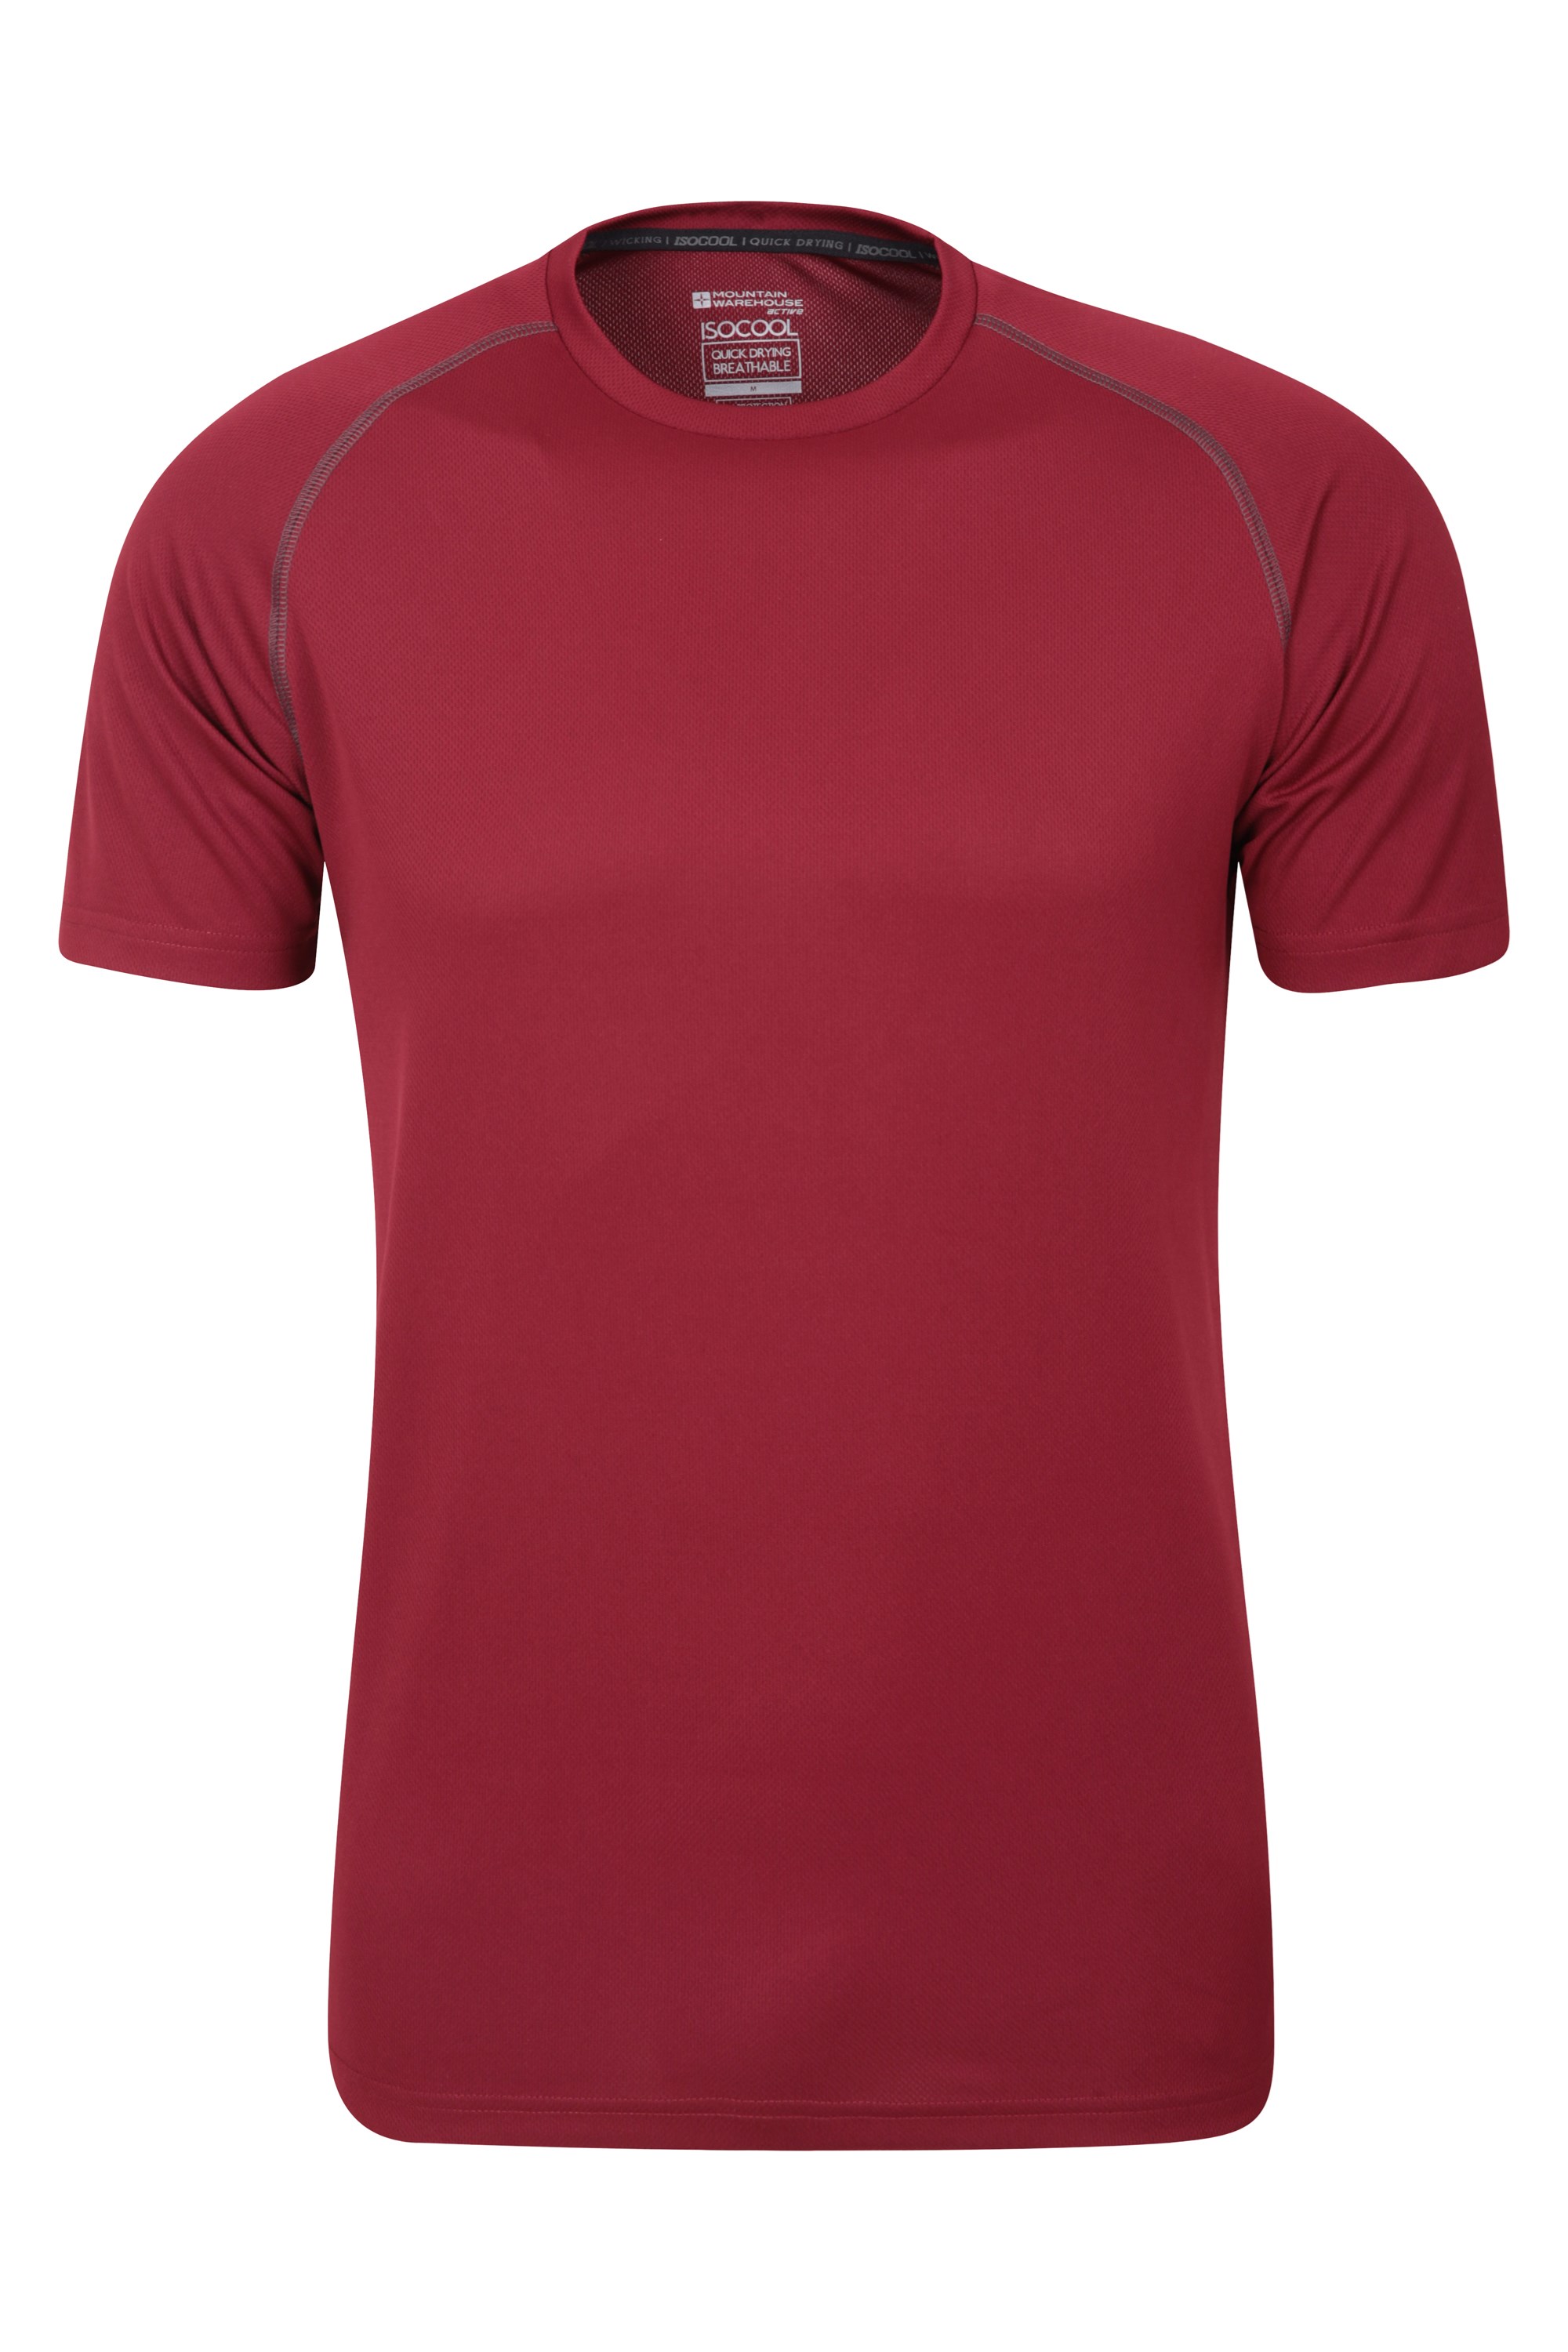 Marque : Mountain WarehouseMountain Warehouse Eden T-Shirt Biologique pour Homme 100 % Coton avec Protection UV l'été léger et Doux Idéal pour Le Printemps Tee-Shirt Confortable 